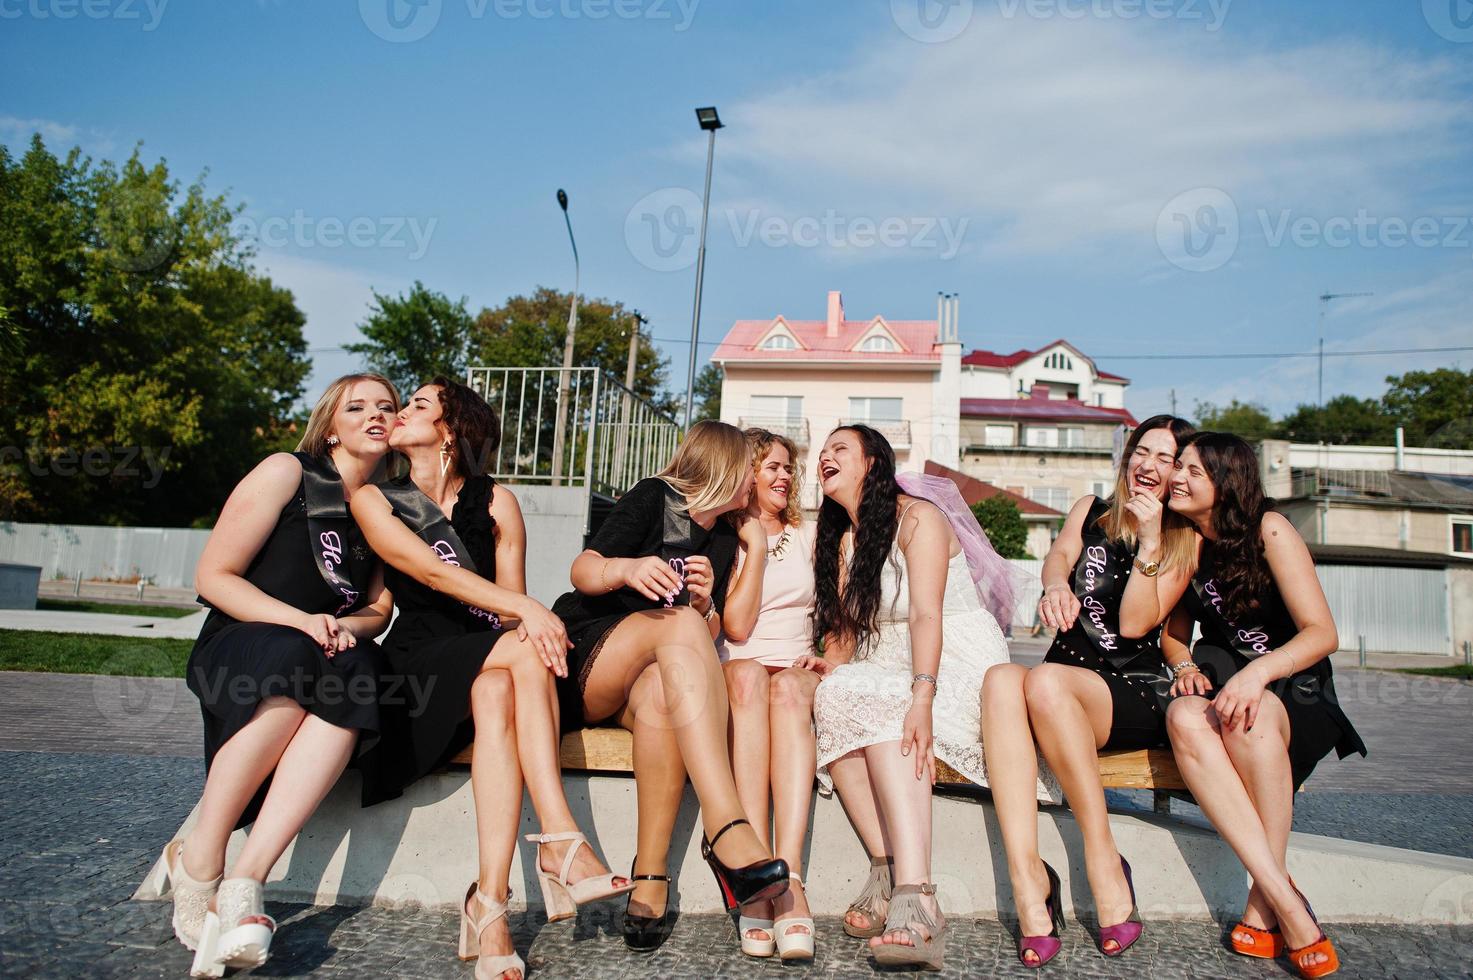 grupp på 7 tjejer bär på svart och 2 brudar sitter på bänken och har roligt på möhippo. foto